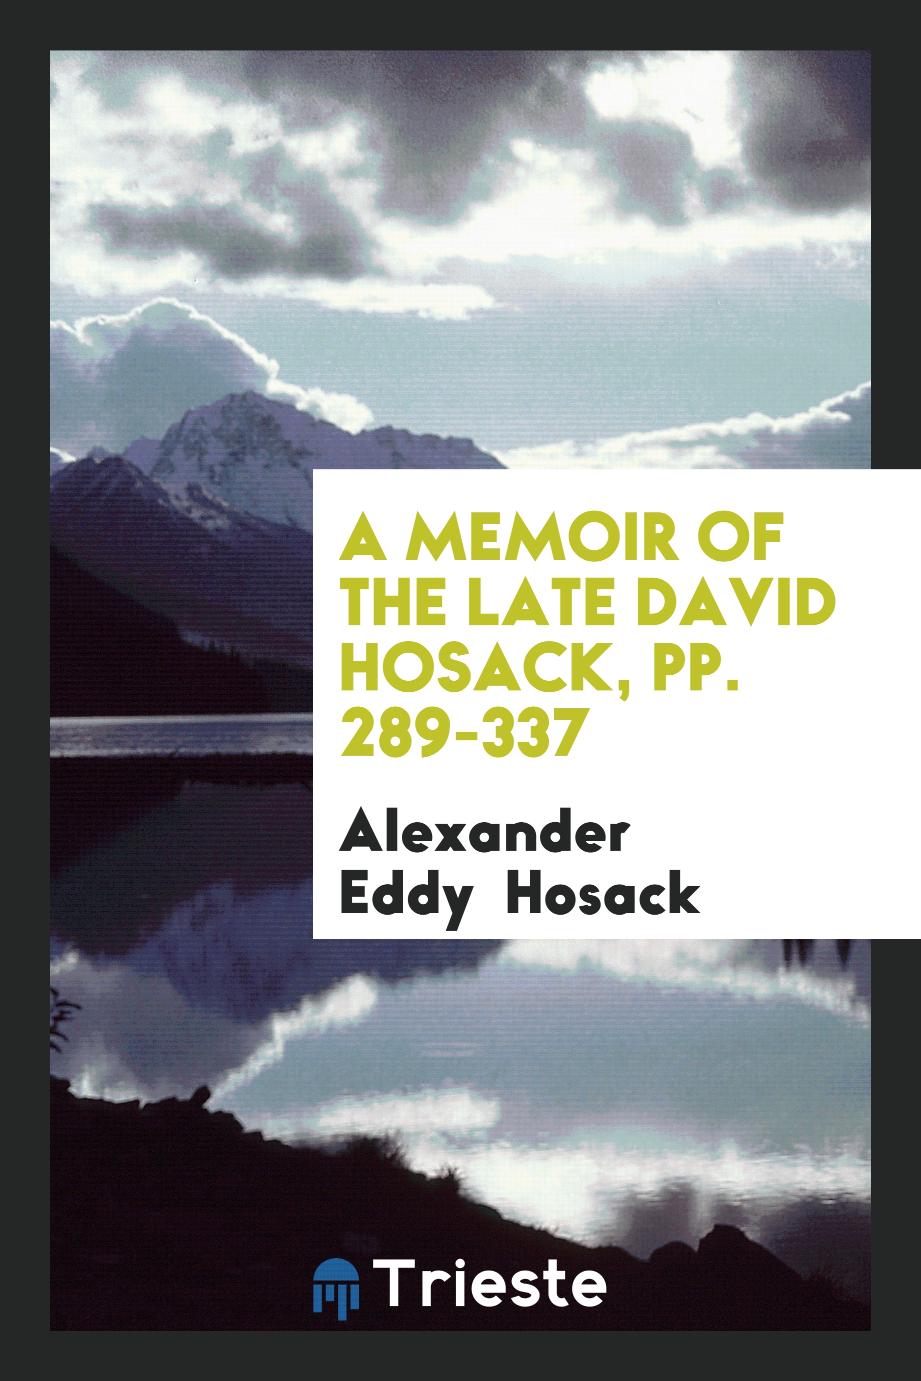 A Memoir of the Late David Hosack, pp. 289-337